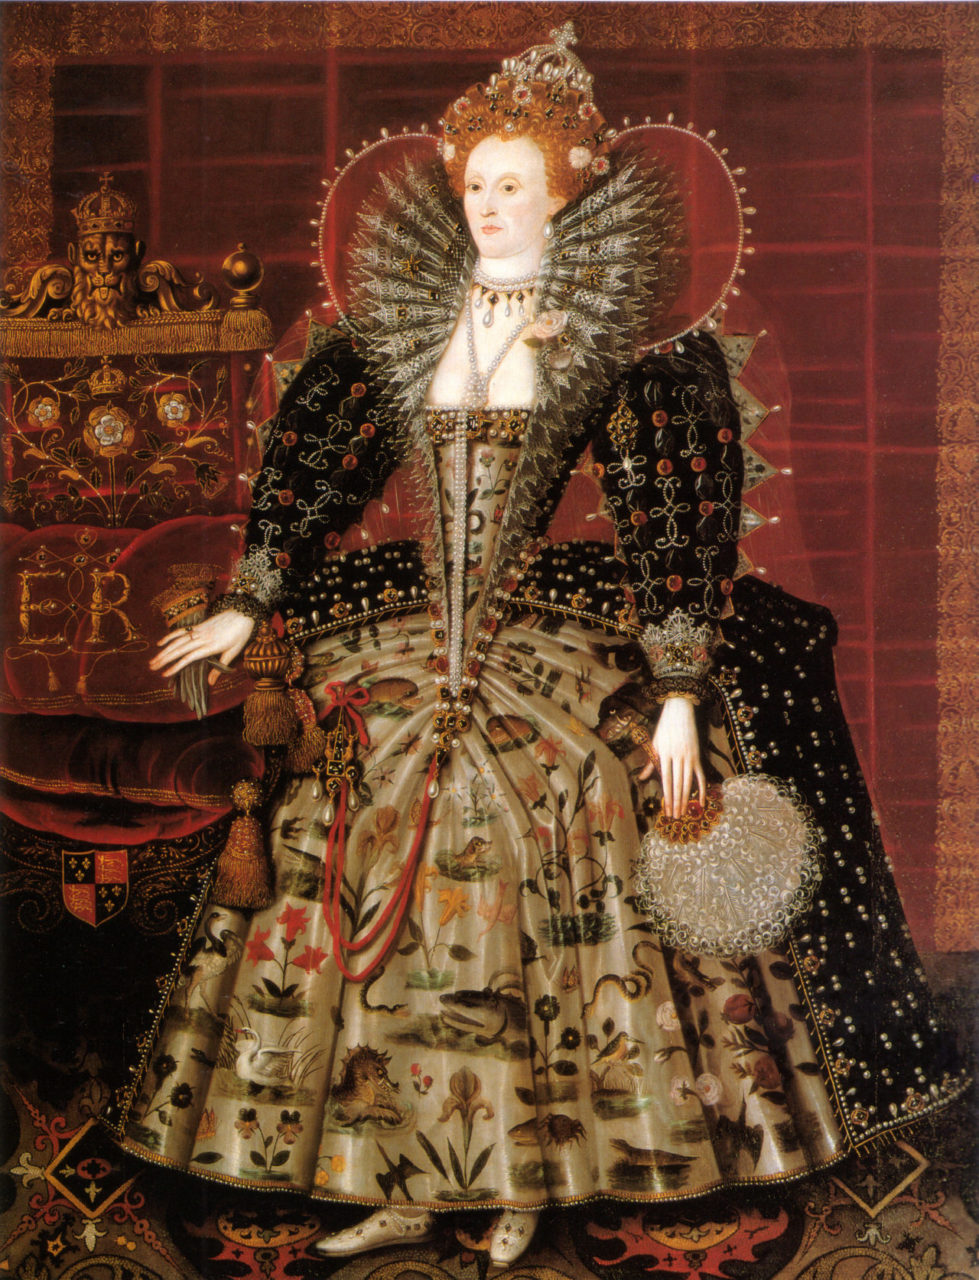 “Hardwick Hall” Portrait of Queen Elizabeth I